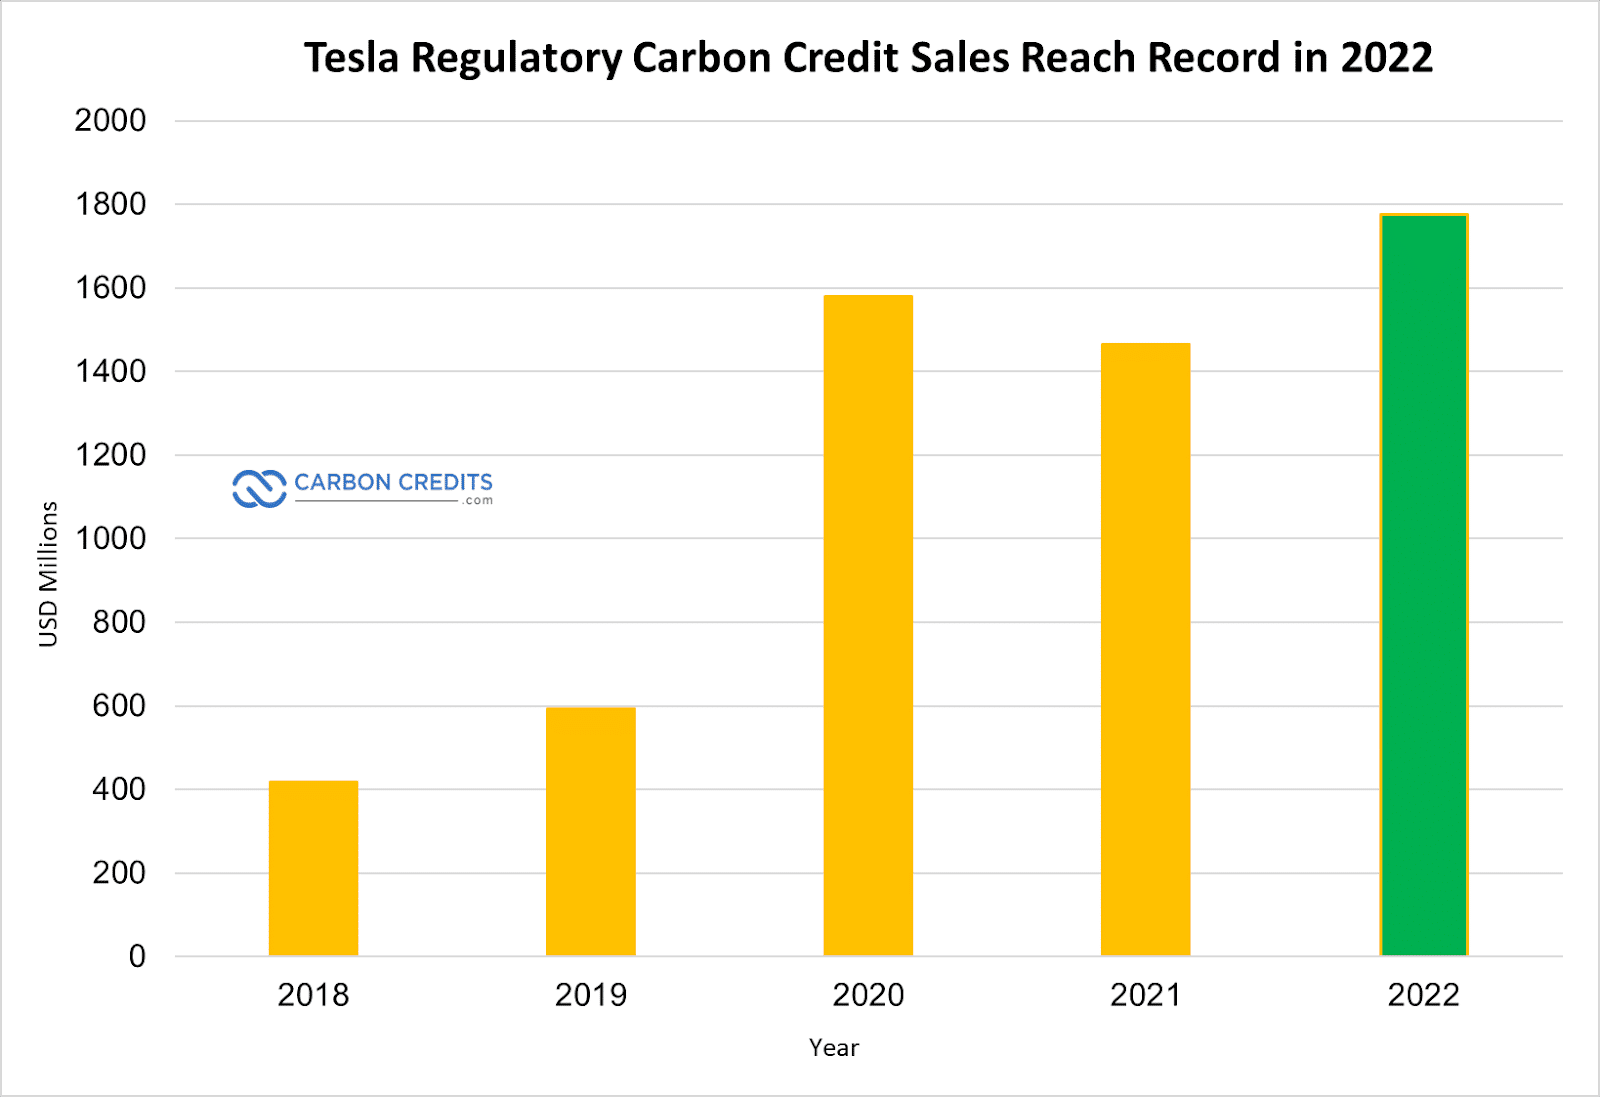 Die Verkäufe von Tesla Carbon Credits erreichen im Jahr 1.78 einen Rekordwert von 2022 Milliarden US-Dollar